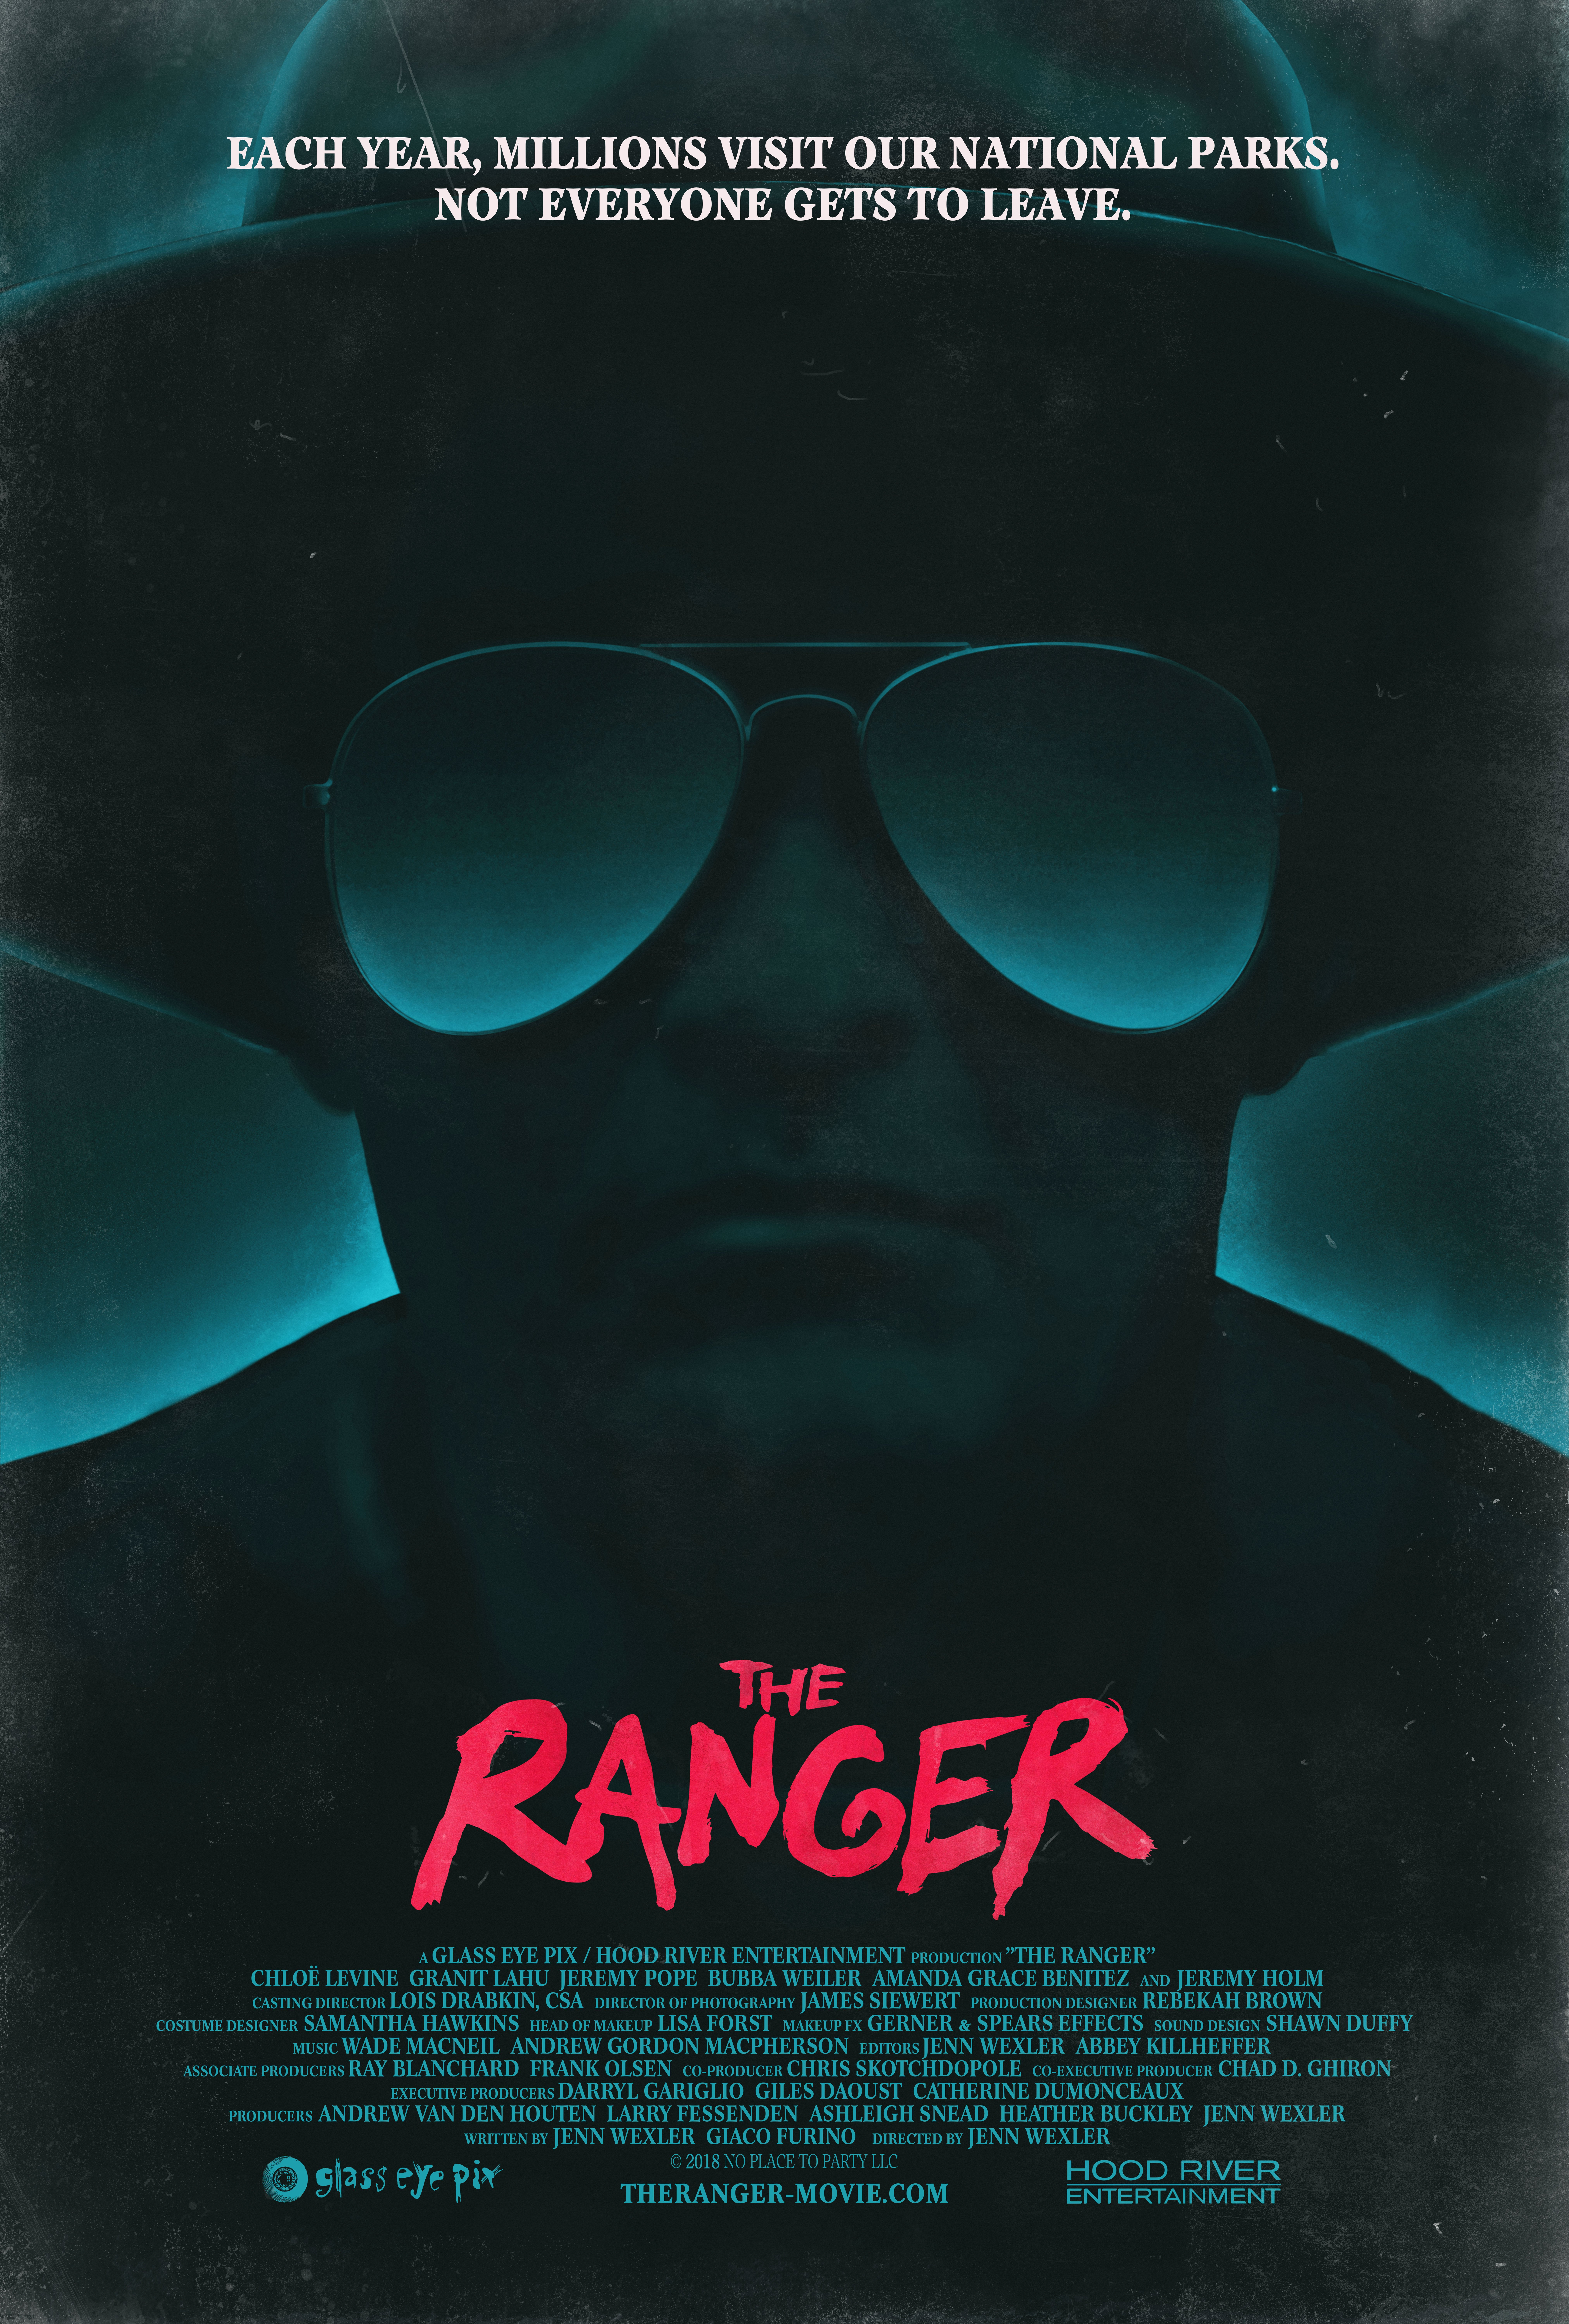 Nonton film The Ranger layarkaca21 indoxx1 ganool online streaming terbaru